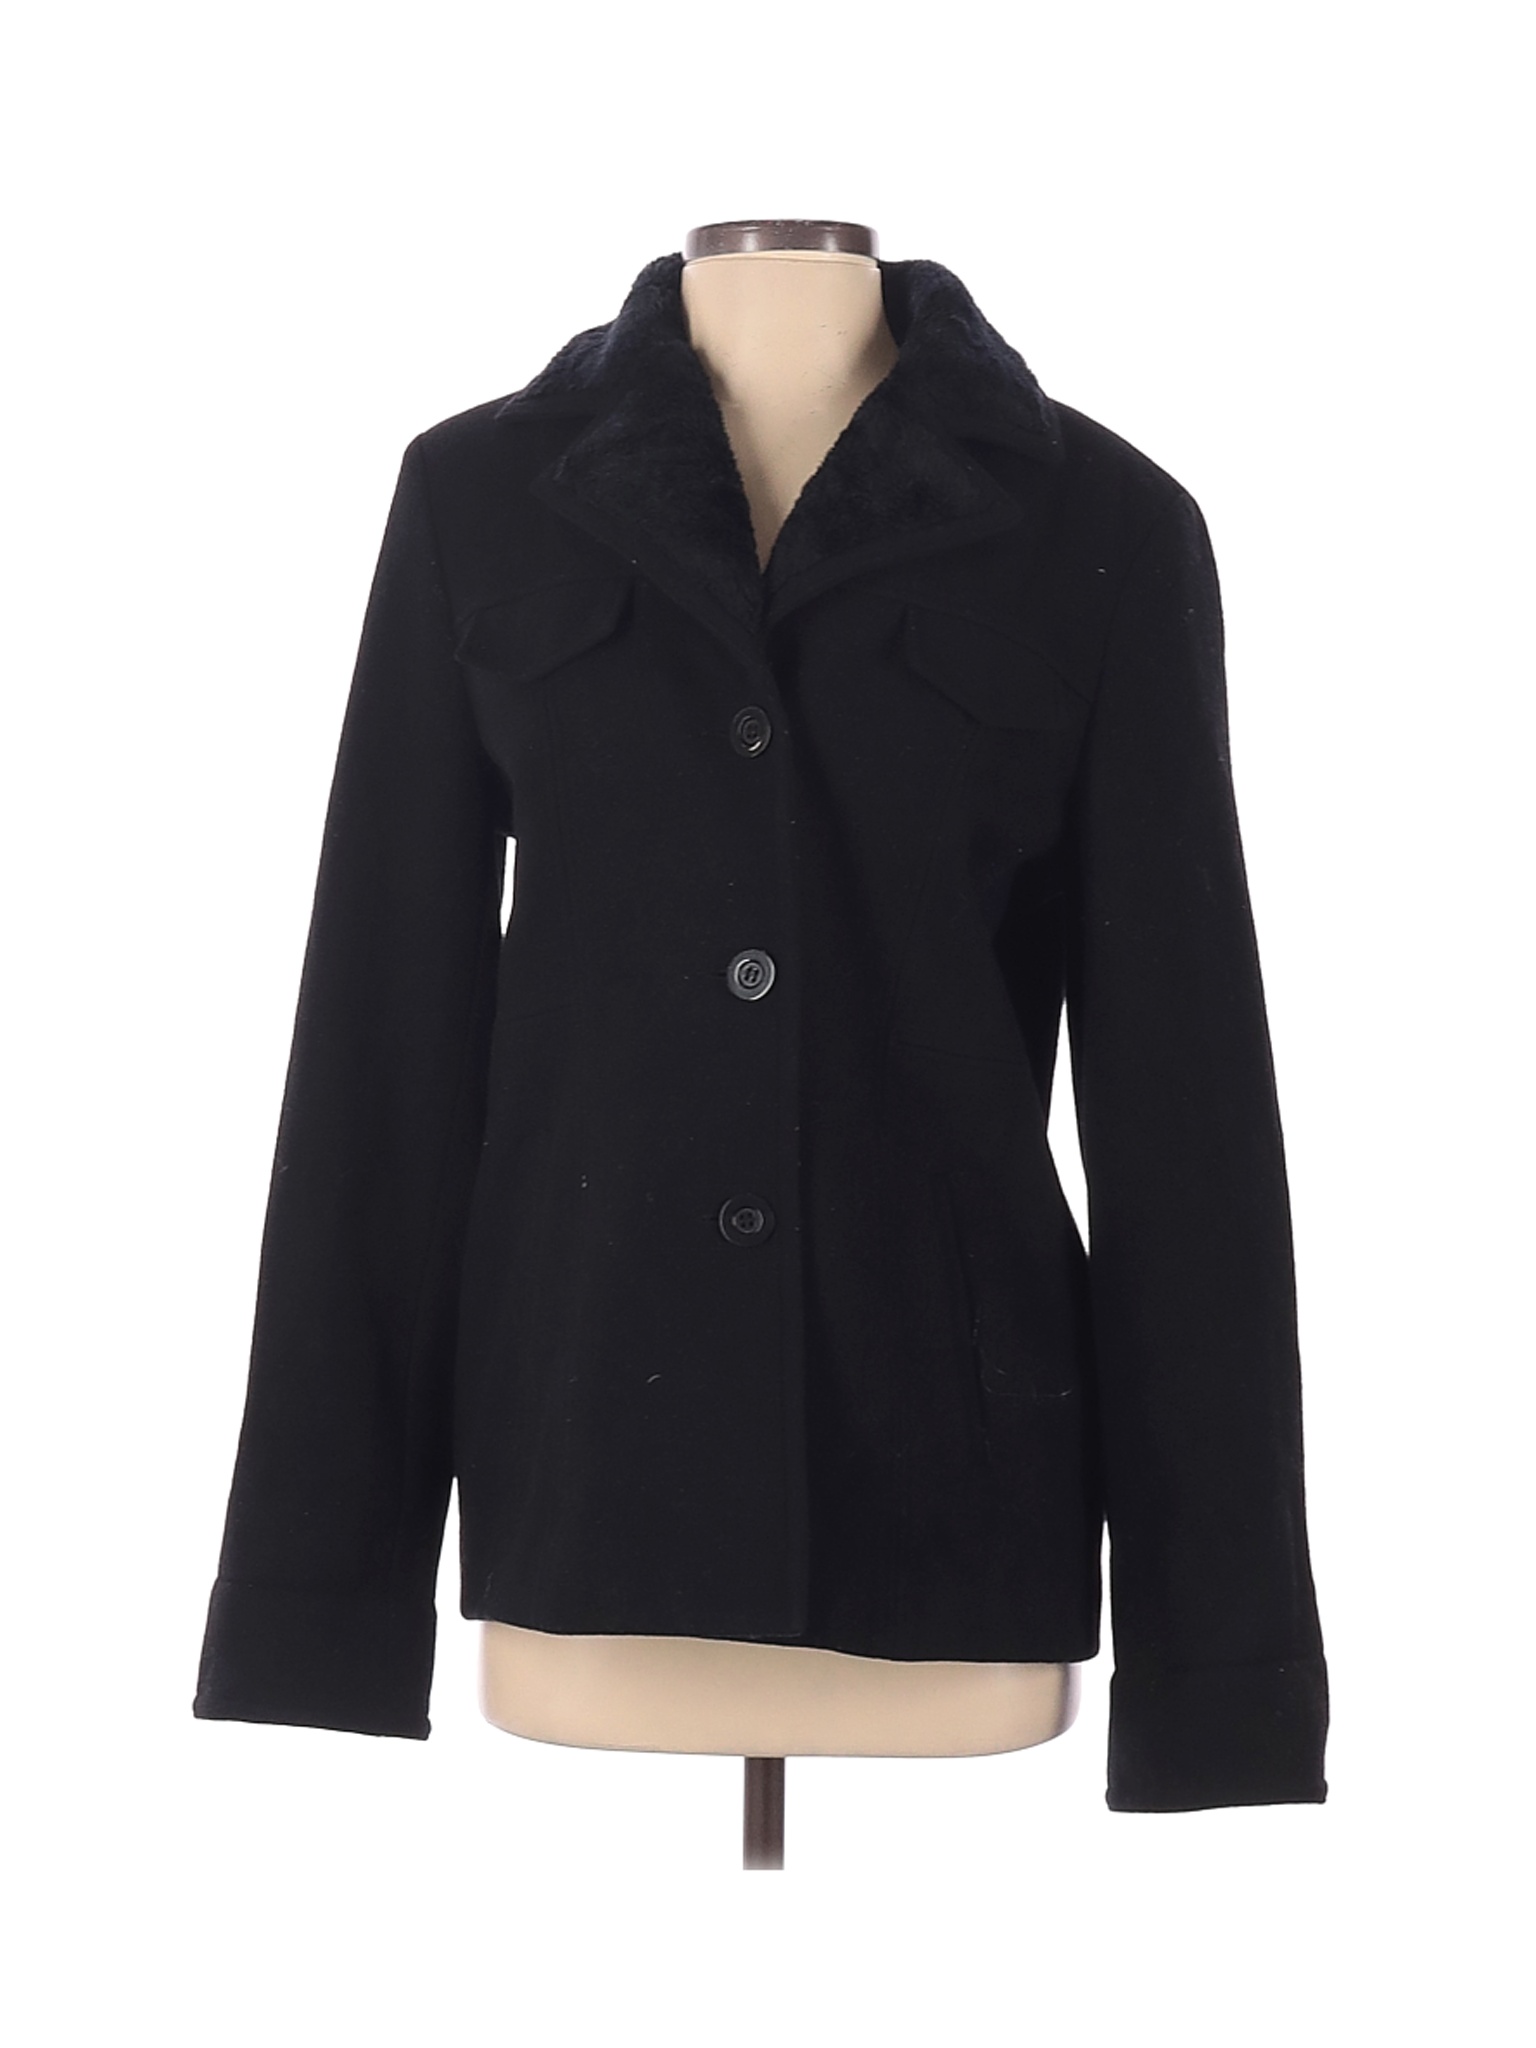 St. John's Bay Women Black Wool Coat S | eBay